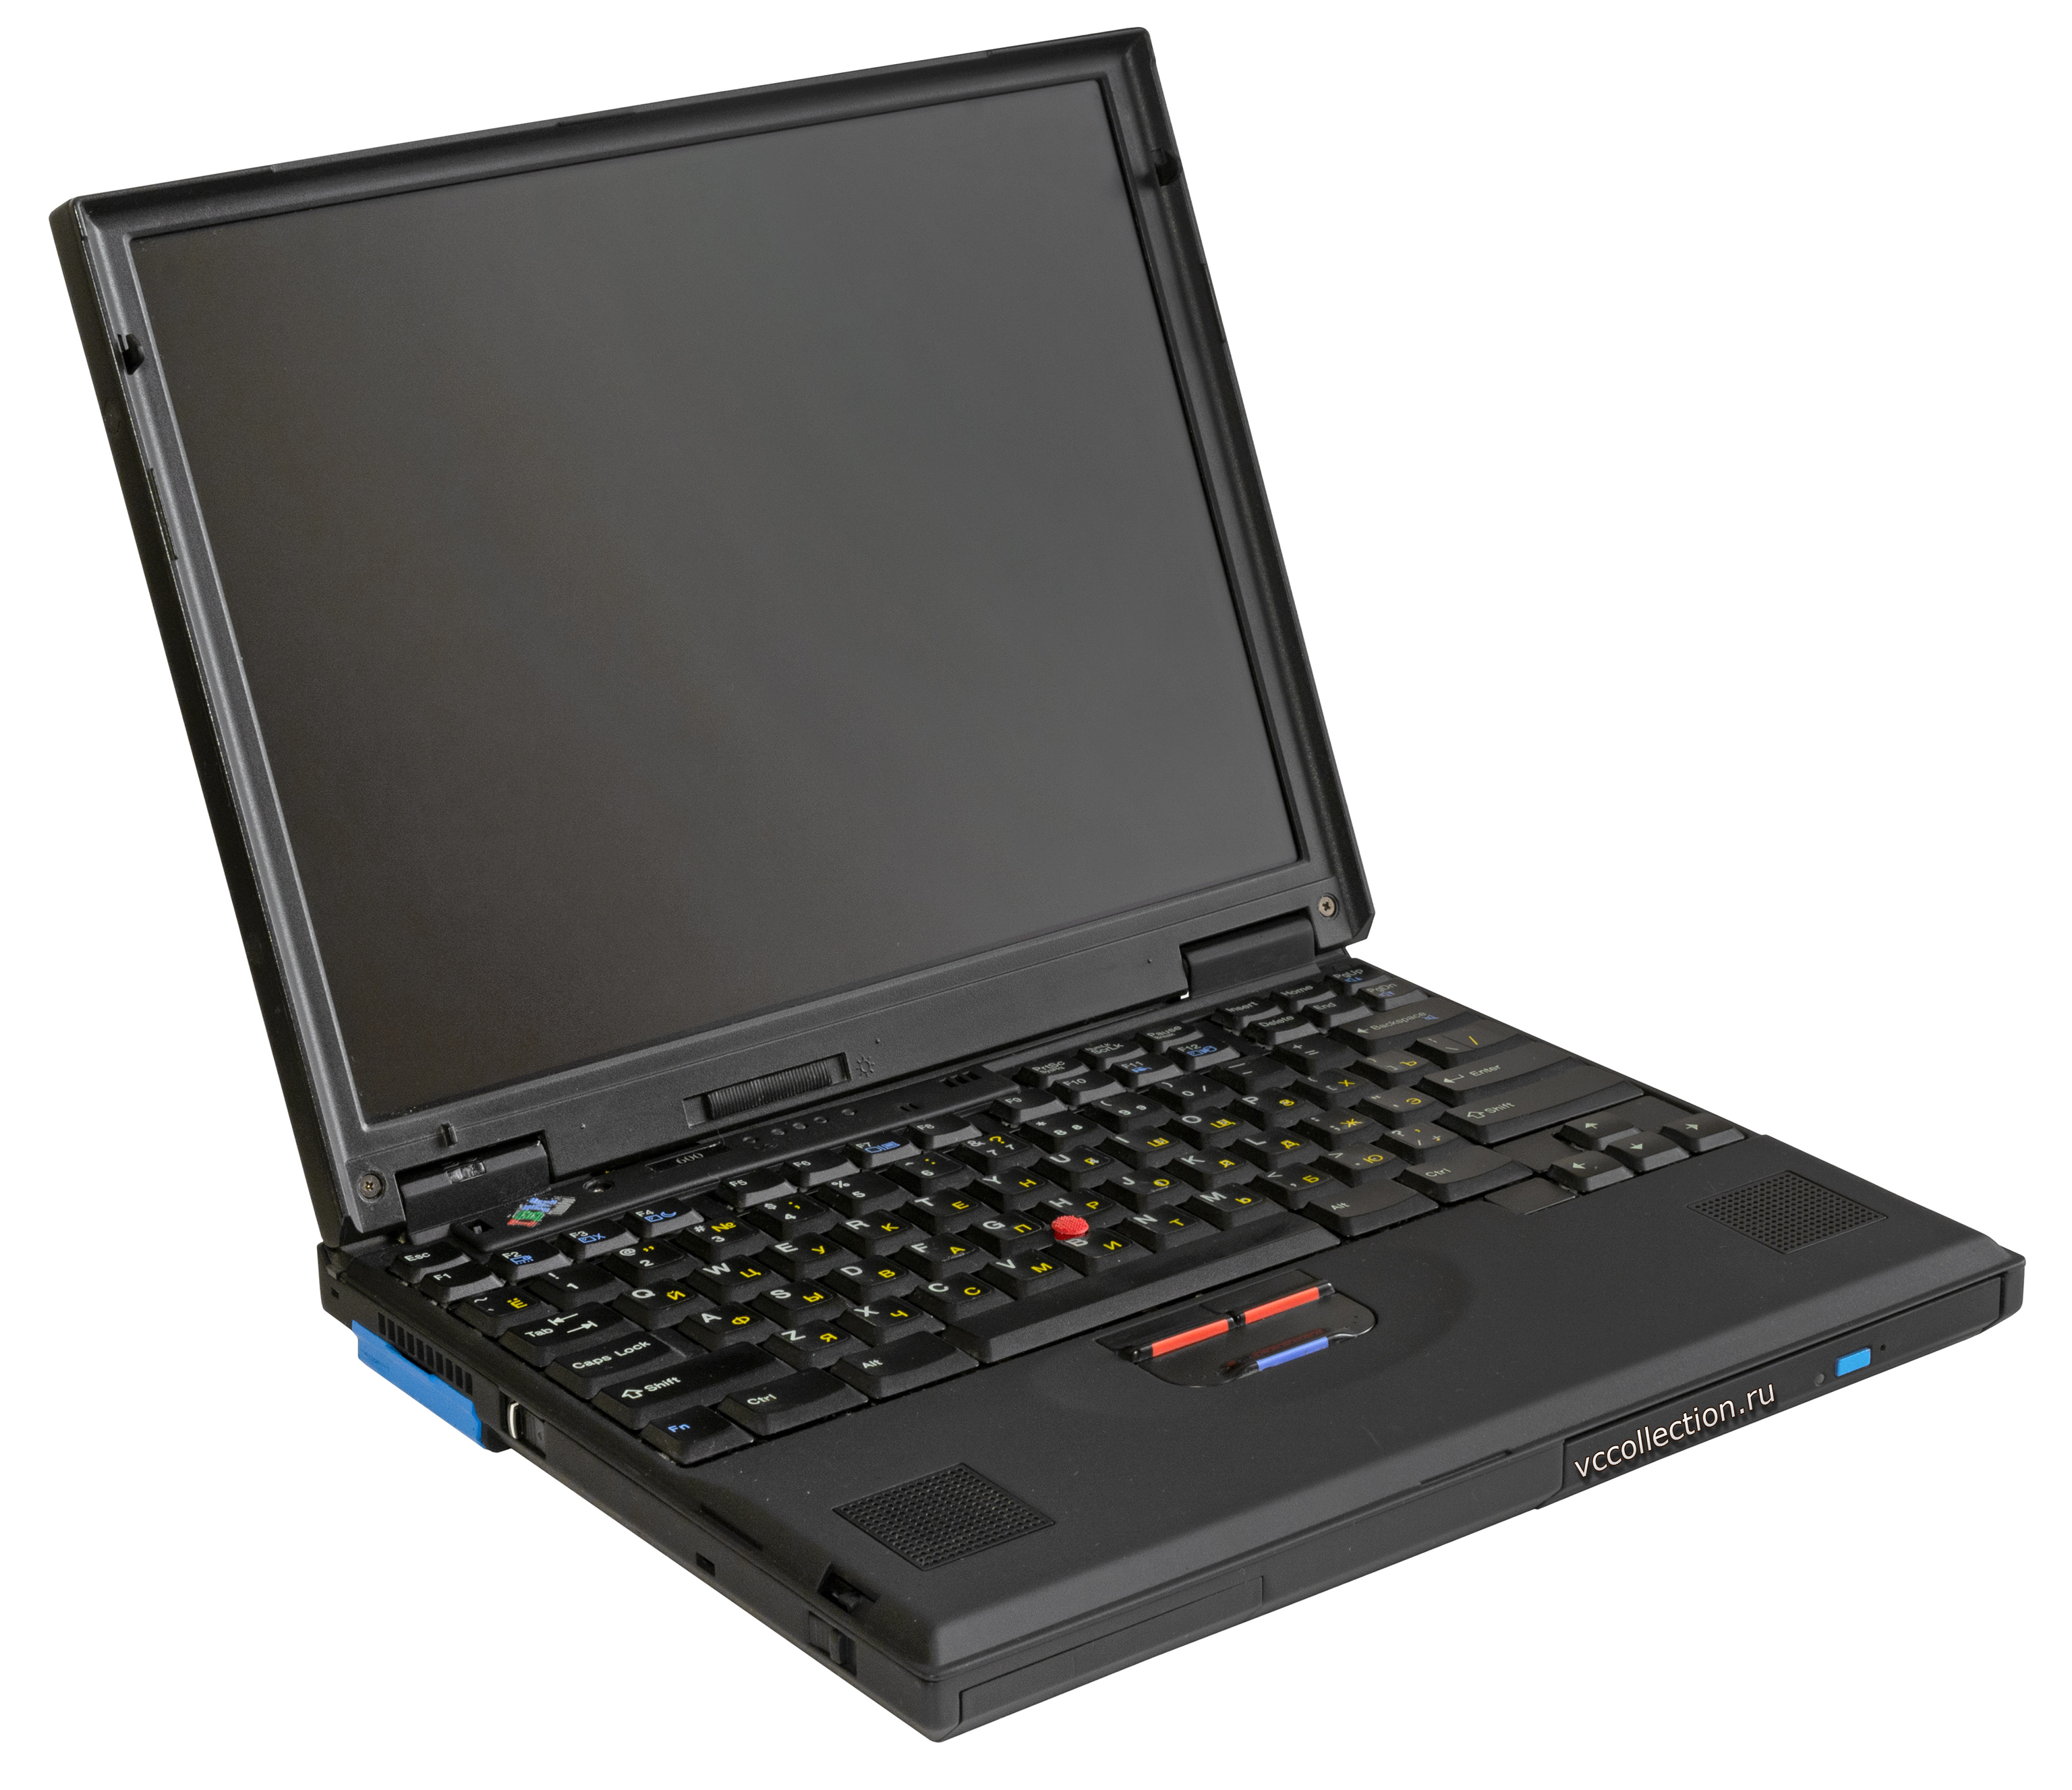 Купить Бу Ноутбук Ibm Thinkpad 600